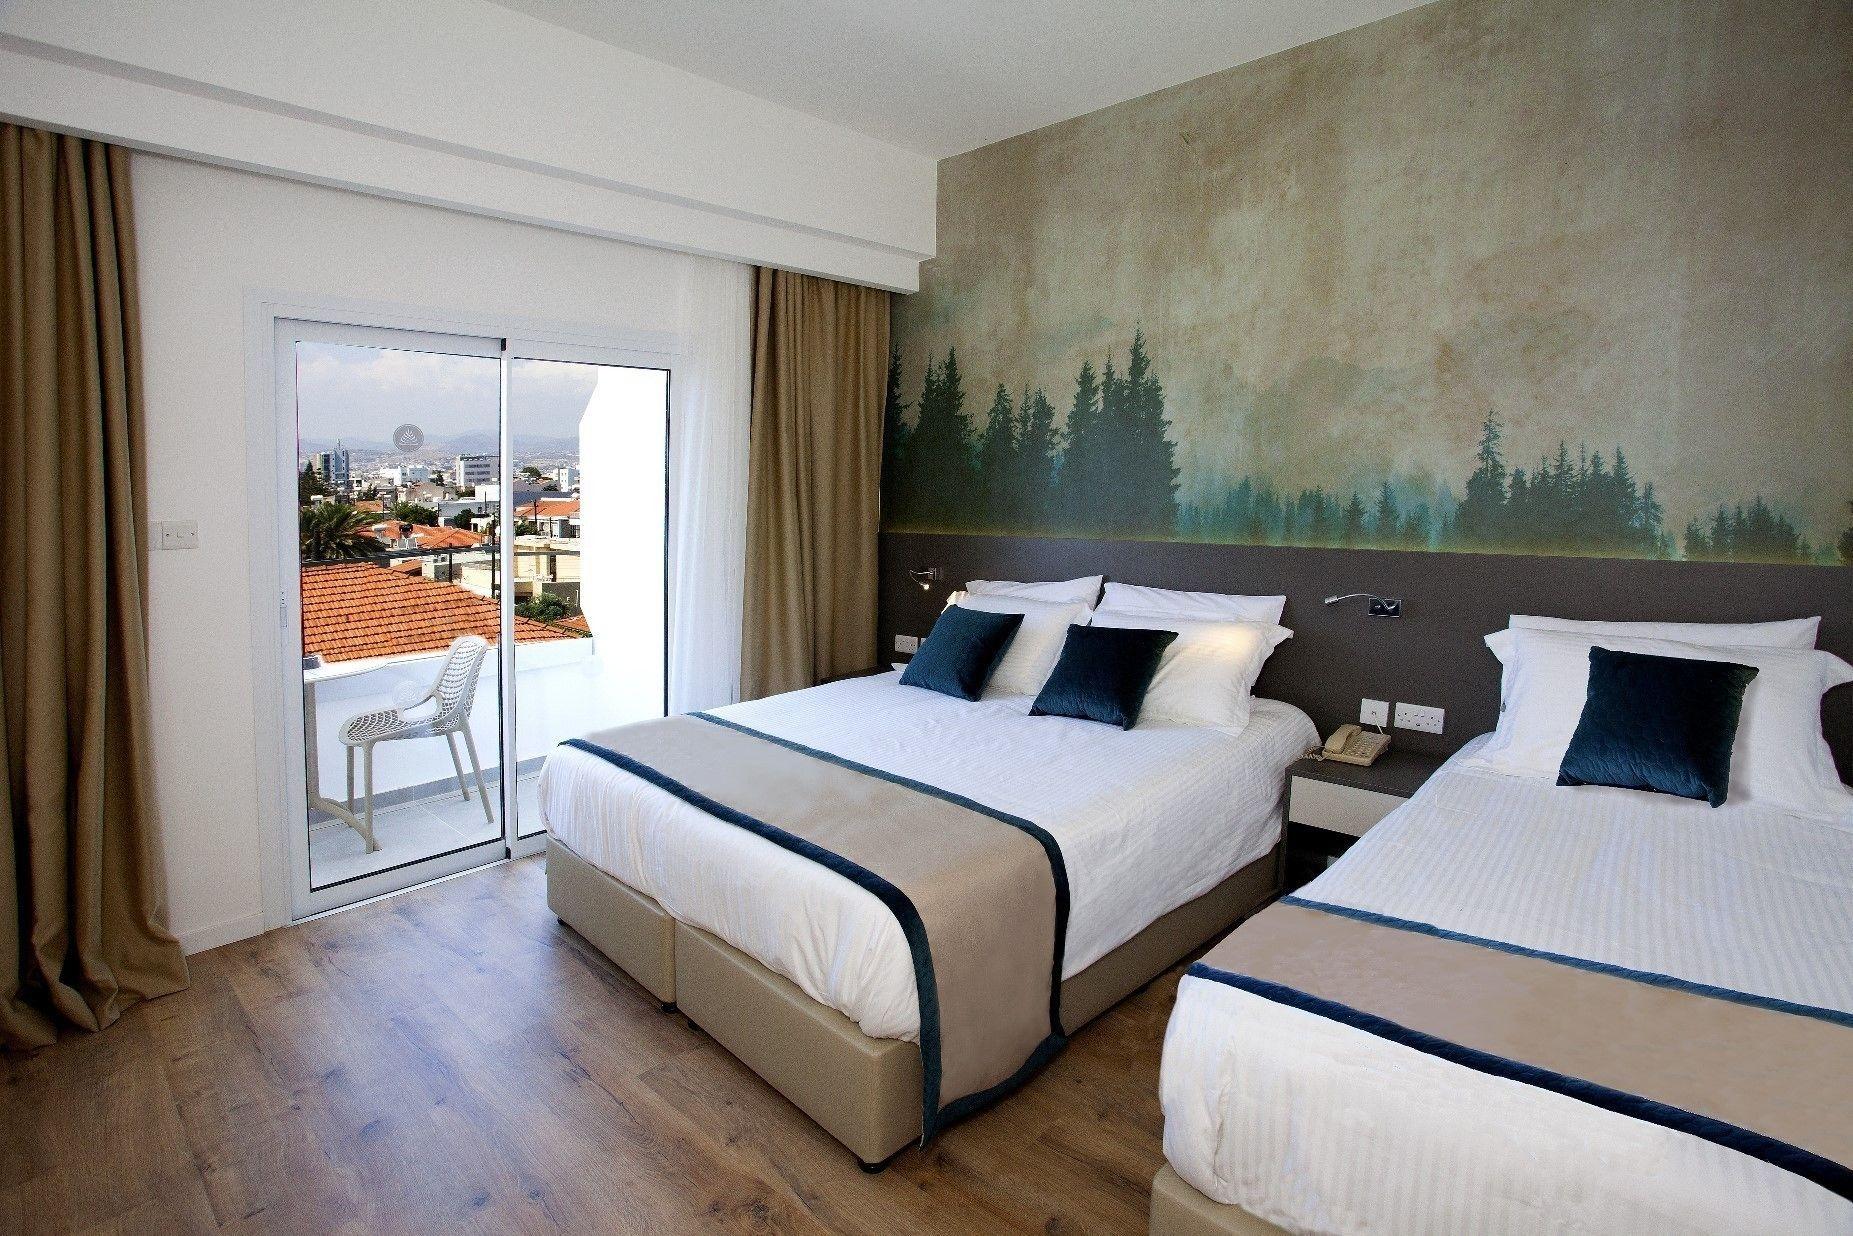 Pefkos City Hotel Limassol Extérieur photo